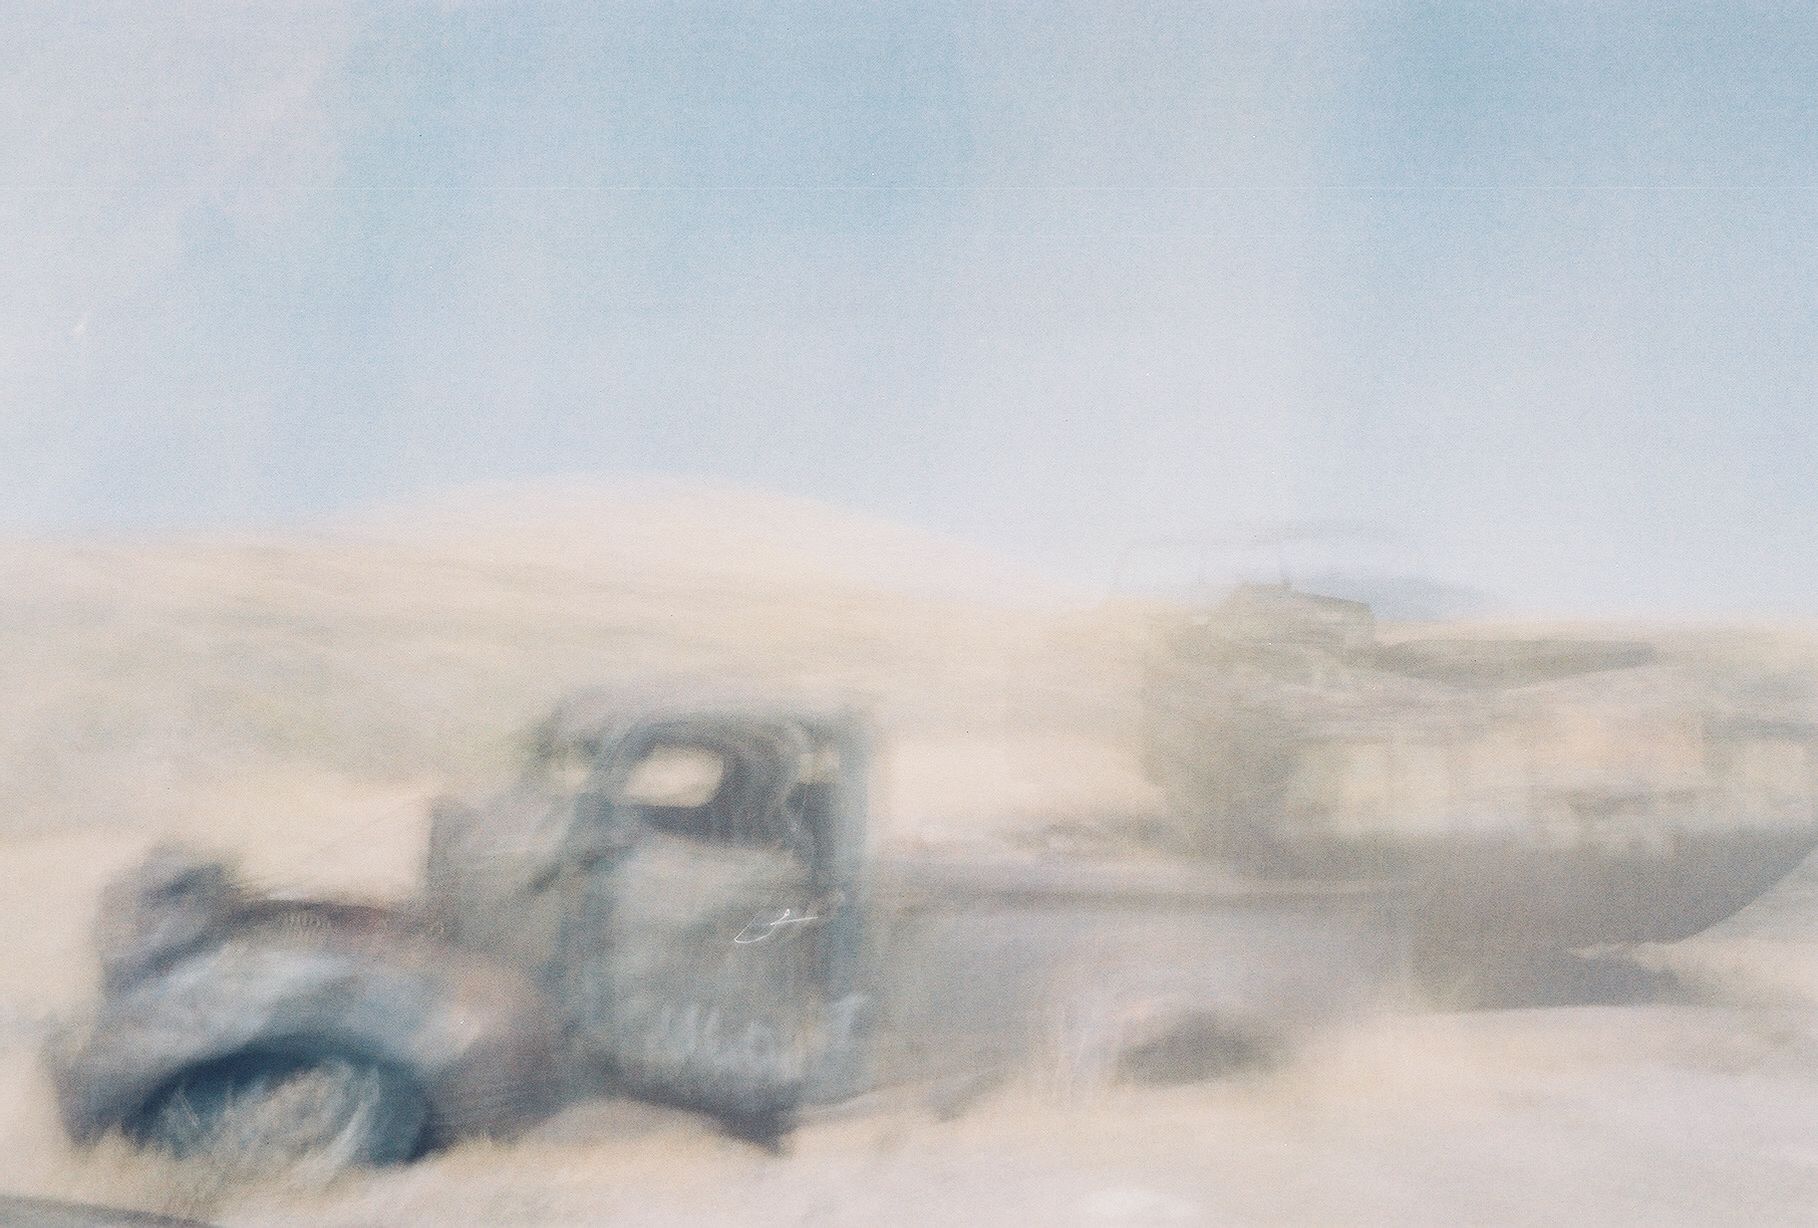 a blurry po of a dump truck in the desert